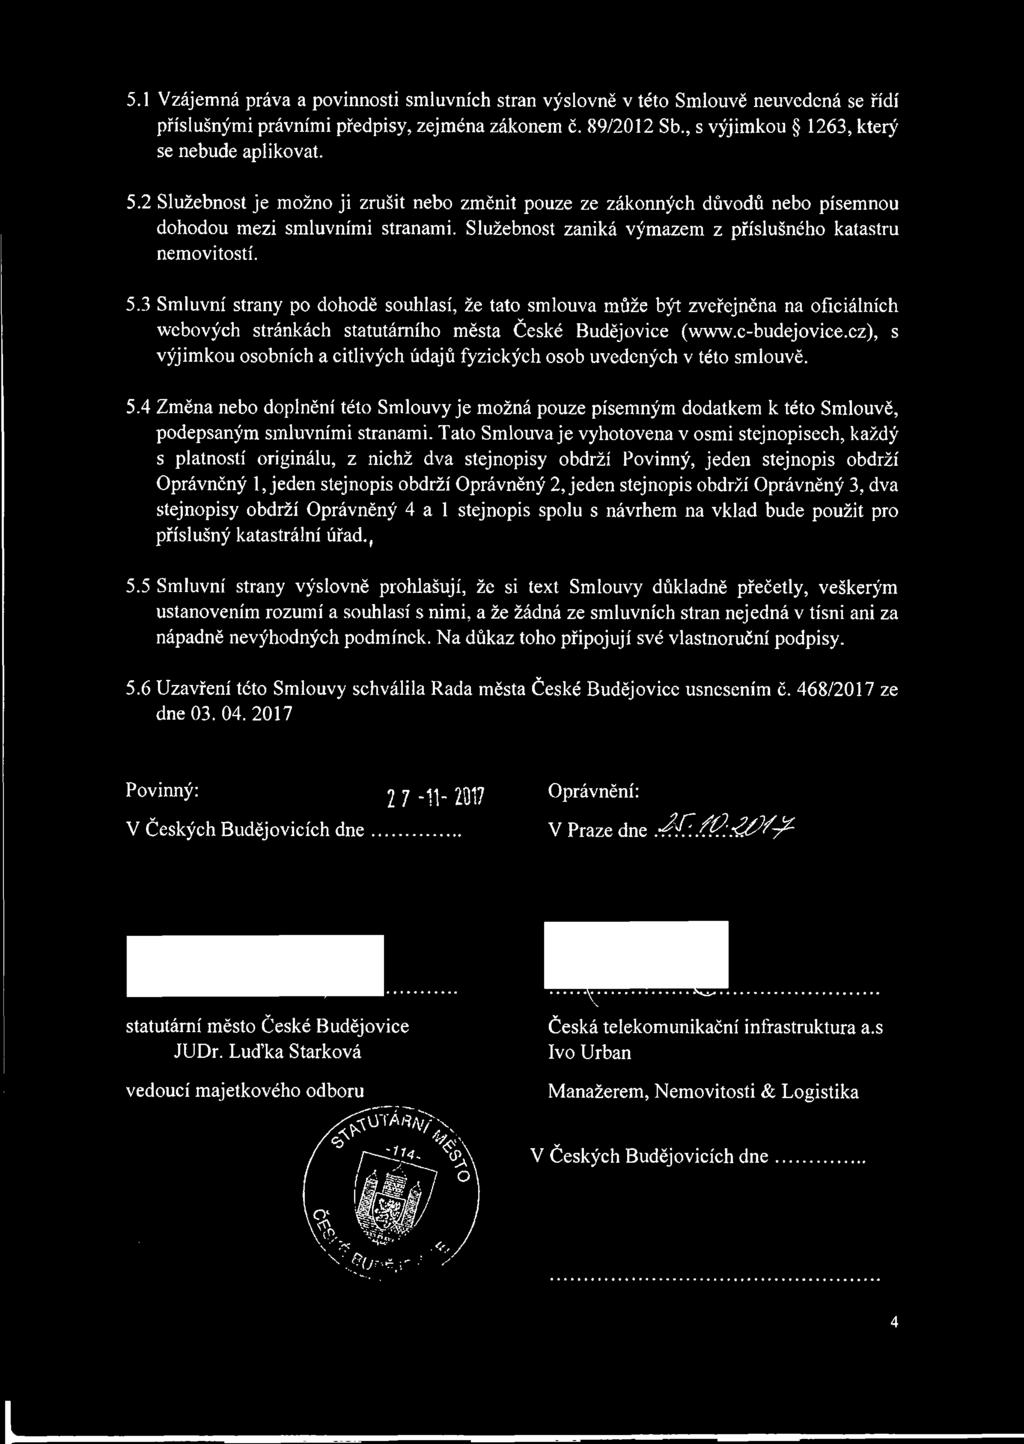 3 Smluvní strany po dohodě souhlasí, že tato smlouva může být zveřejněna na oficiálních wcbových stránkách statutárního města České Budějovice (www.c-budejovice.